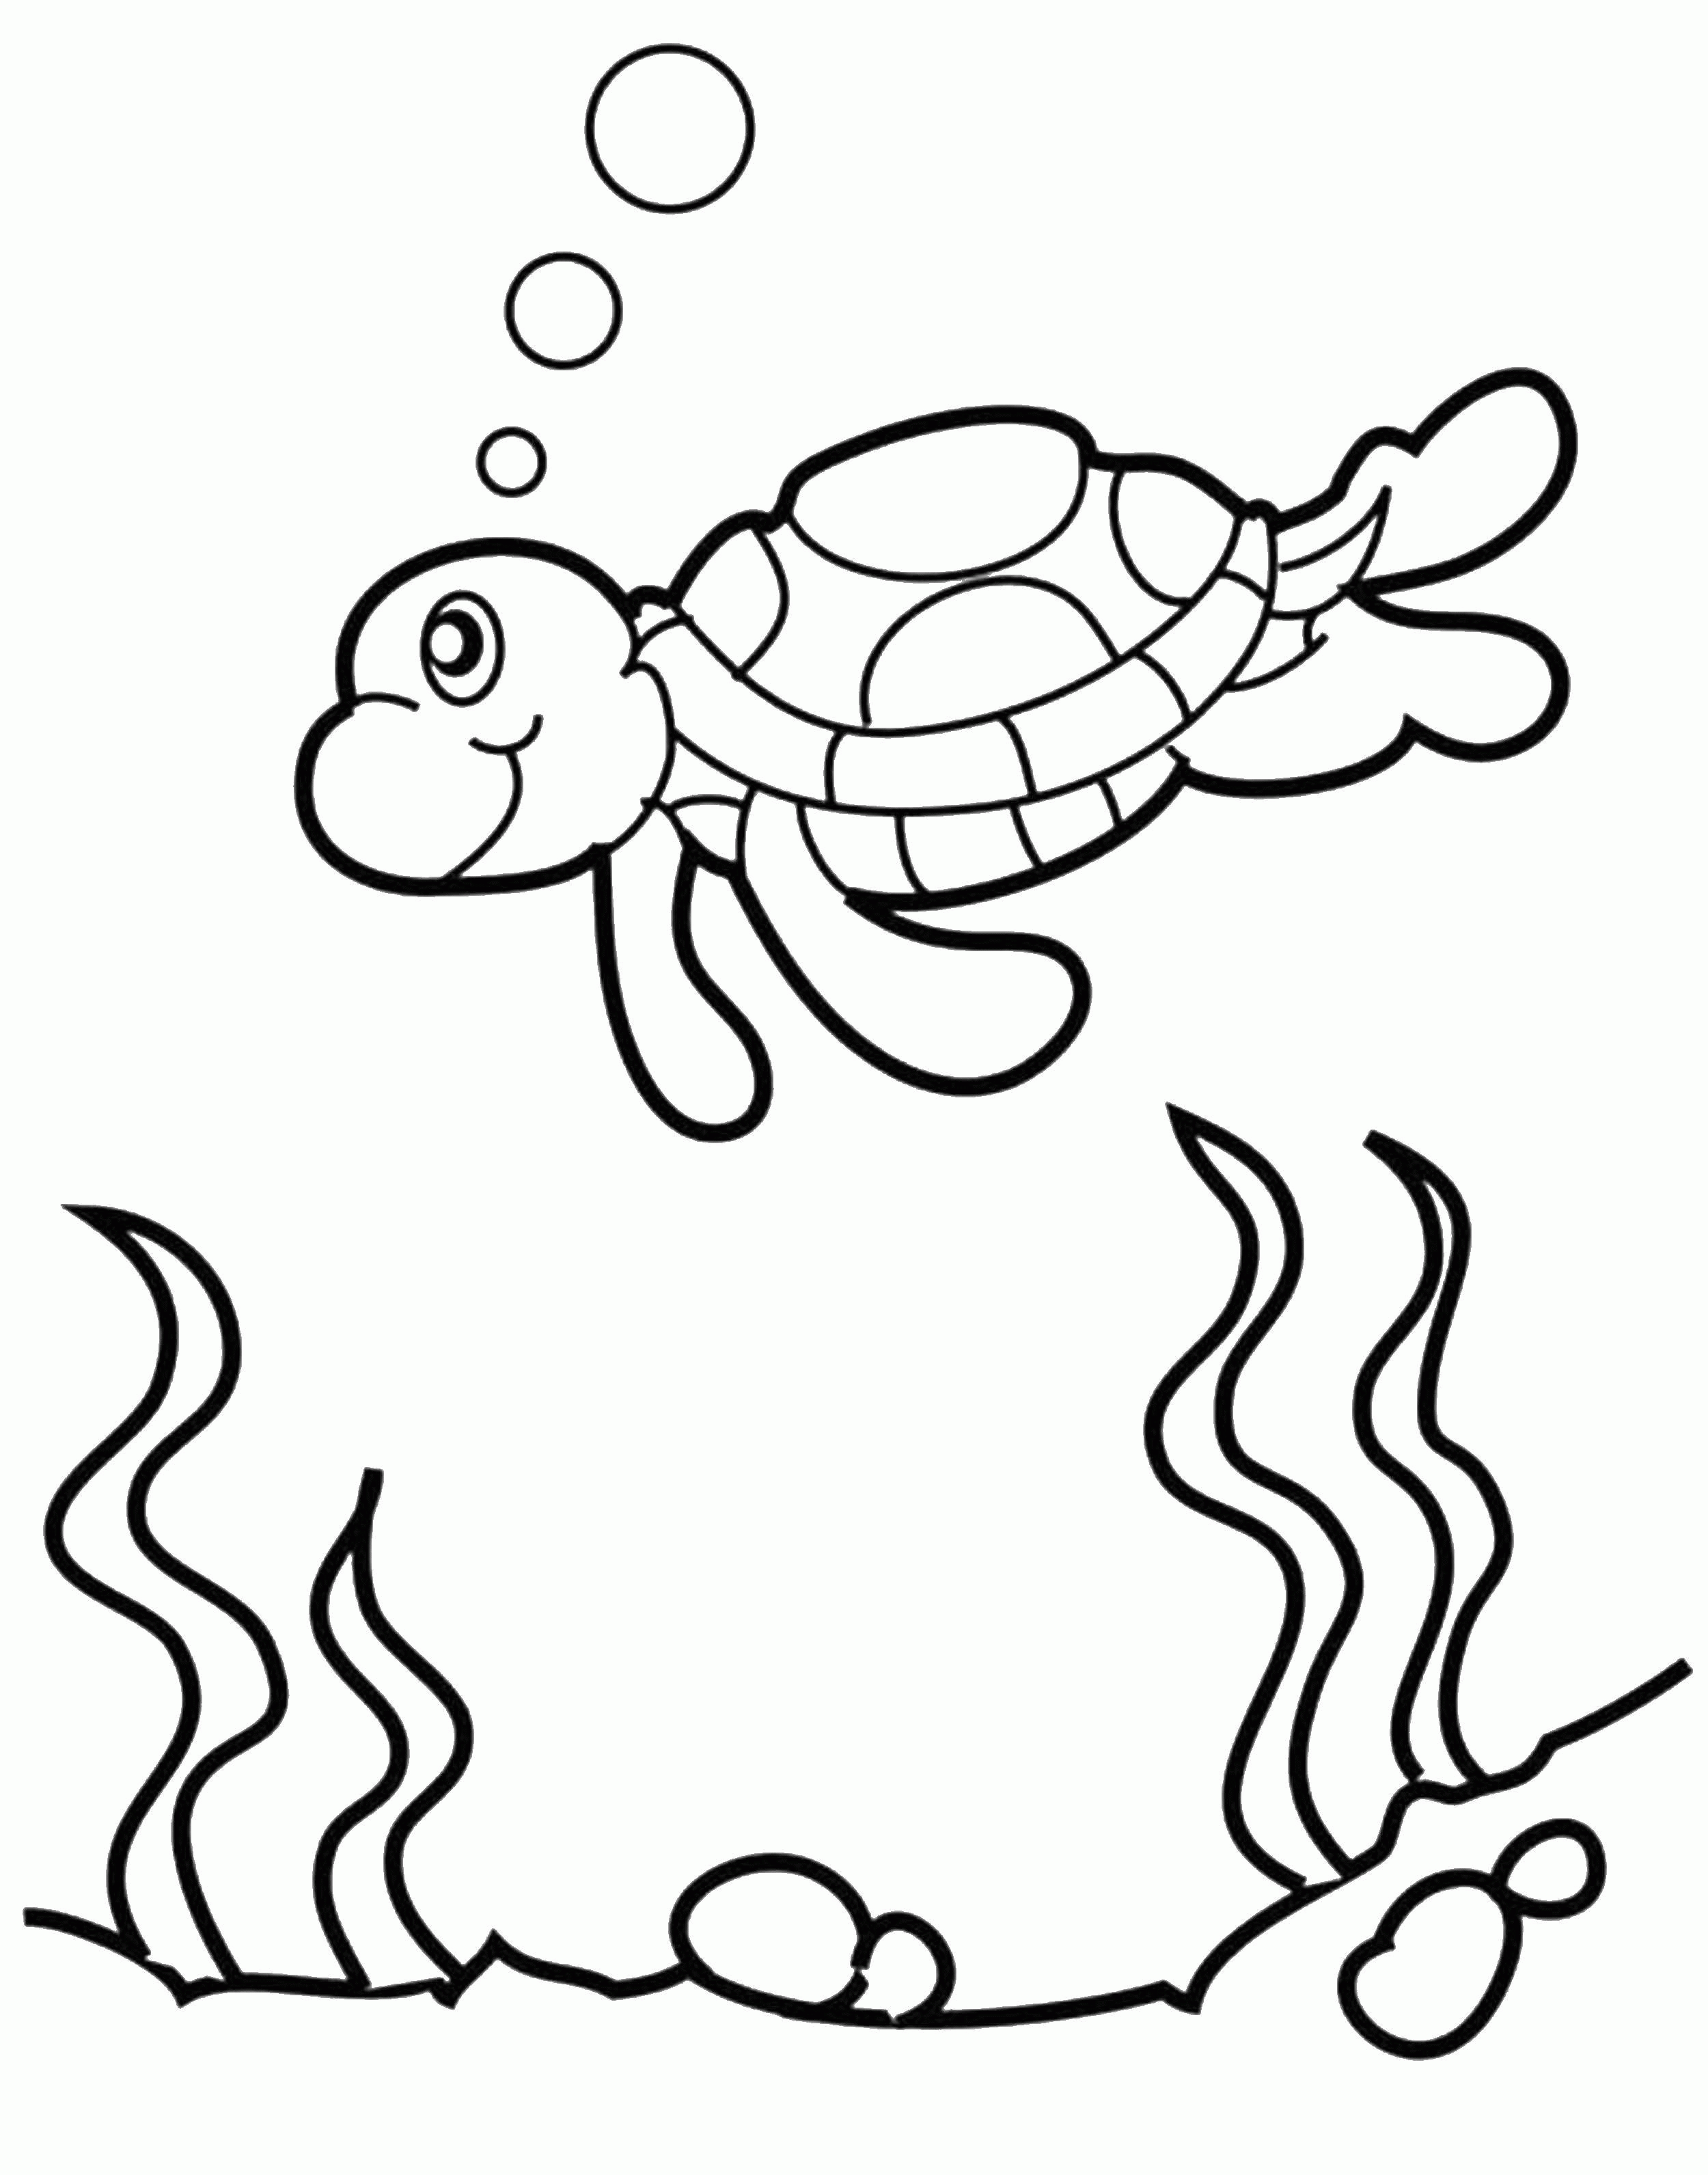 Название: Раскраска Название: Раскраска Морская черепашка пускает пузырики. Категория: детеныши животных. Теги: Рептилия, черепаха.. Категория: . Теги: .